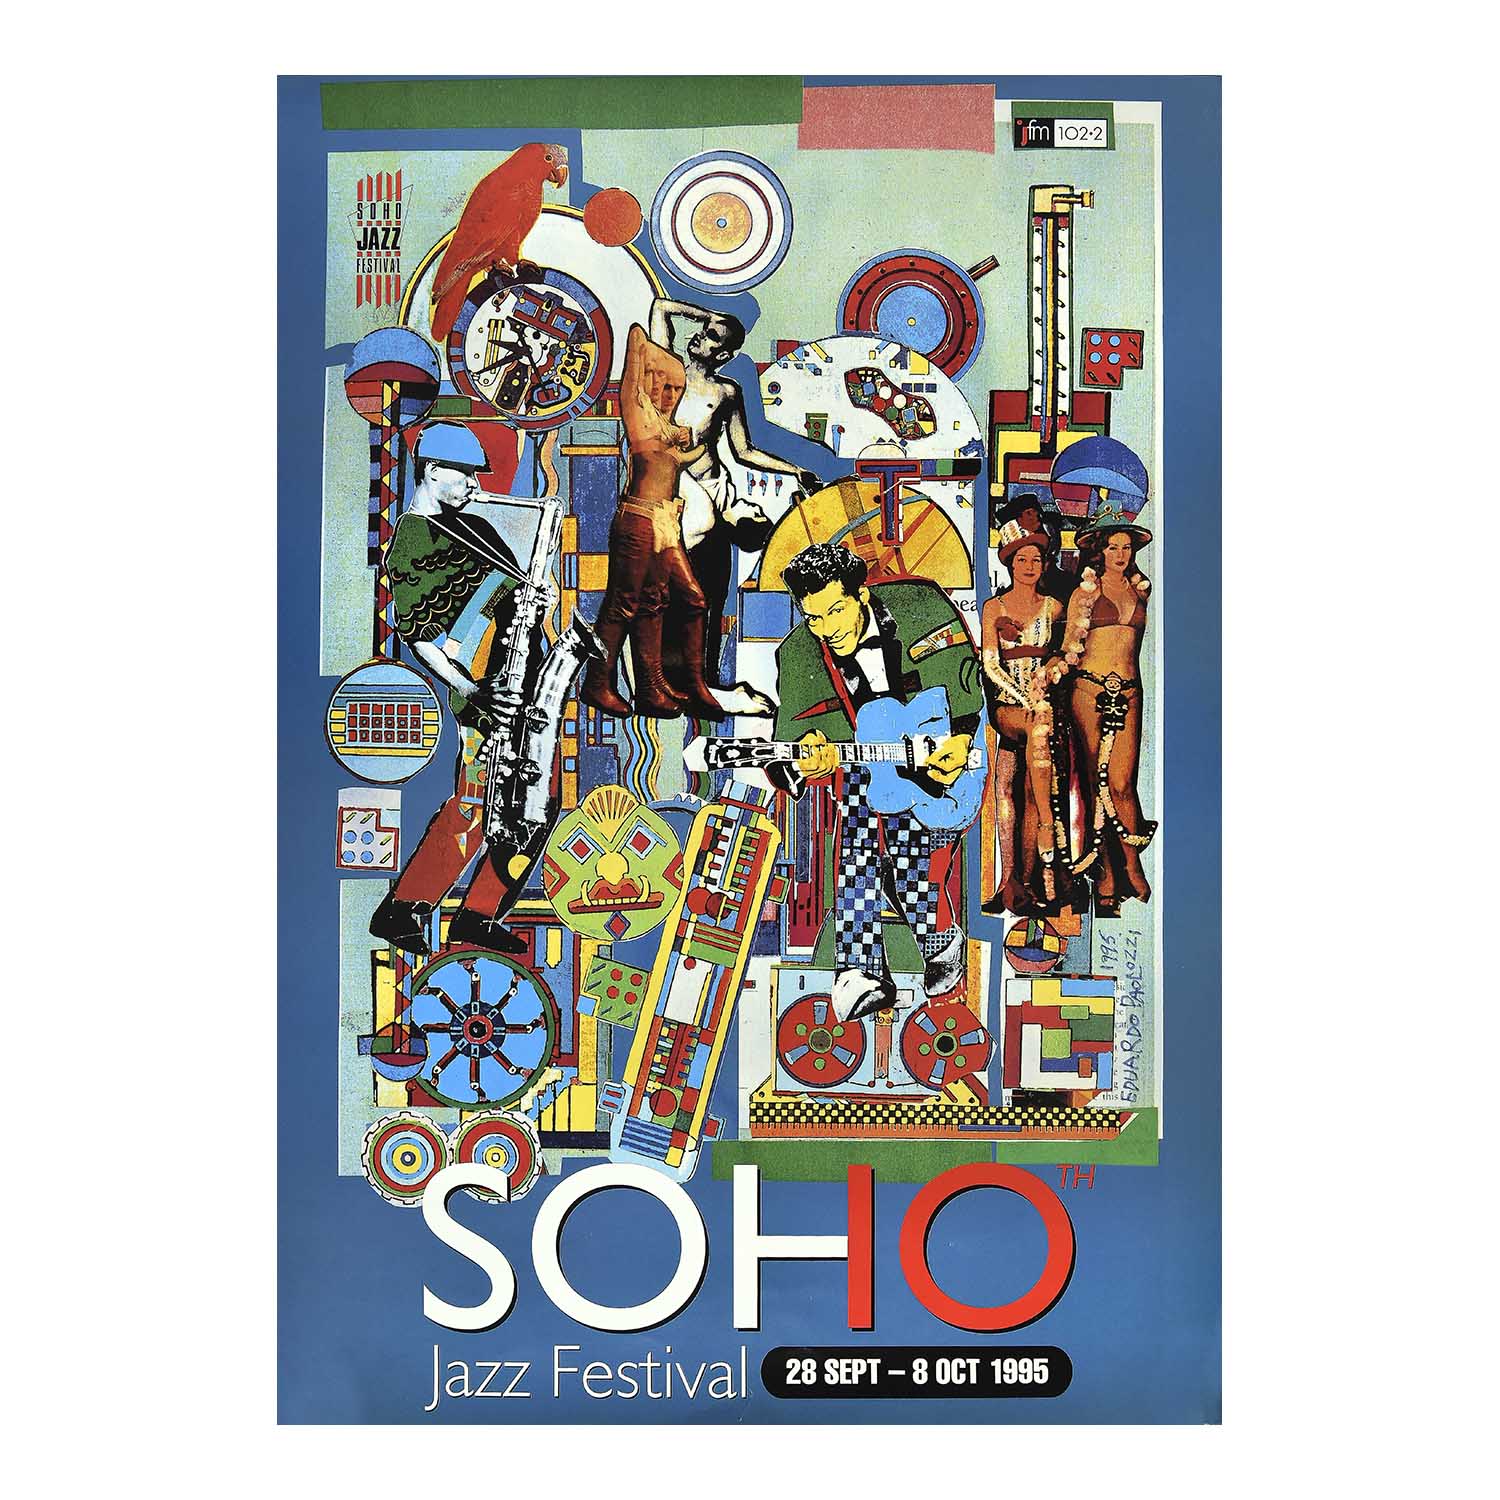 original poster for the 1995 Soho Jazz Festival designed by the ‘godfather’ of pop art, Eduardo Paolozzi. 